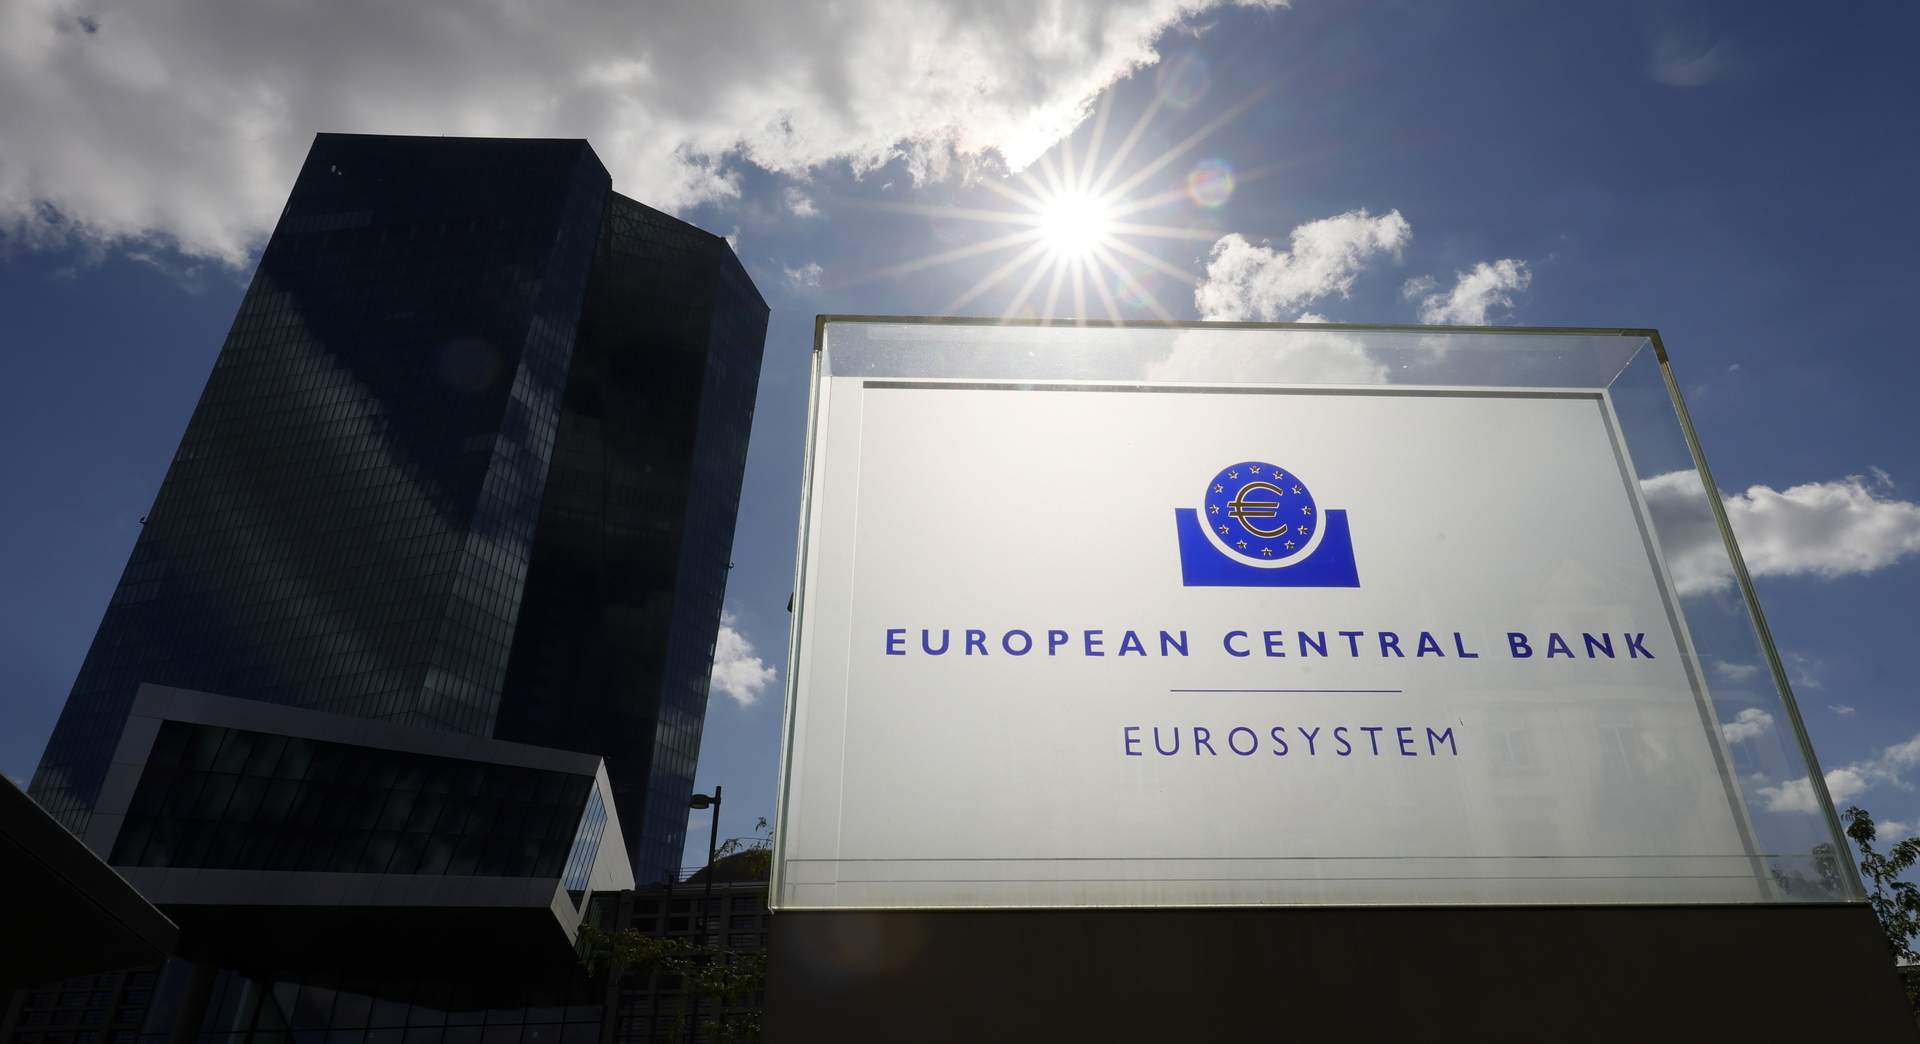 Banco Central Europeo urge a la banca a cuidar la exposición del sector inmobiliario ante el alza de tasas